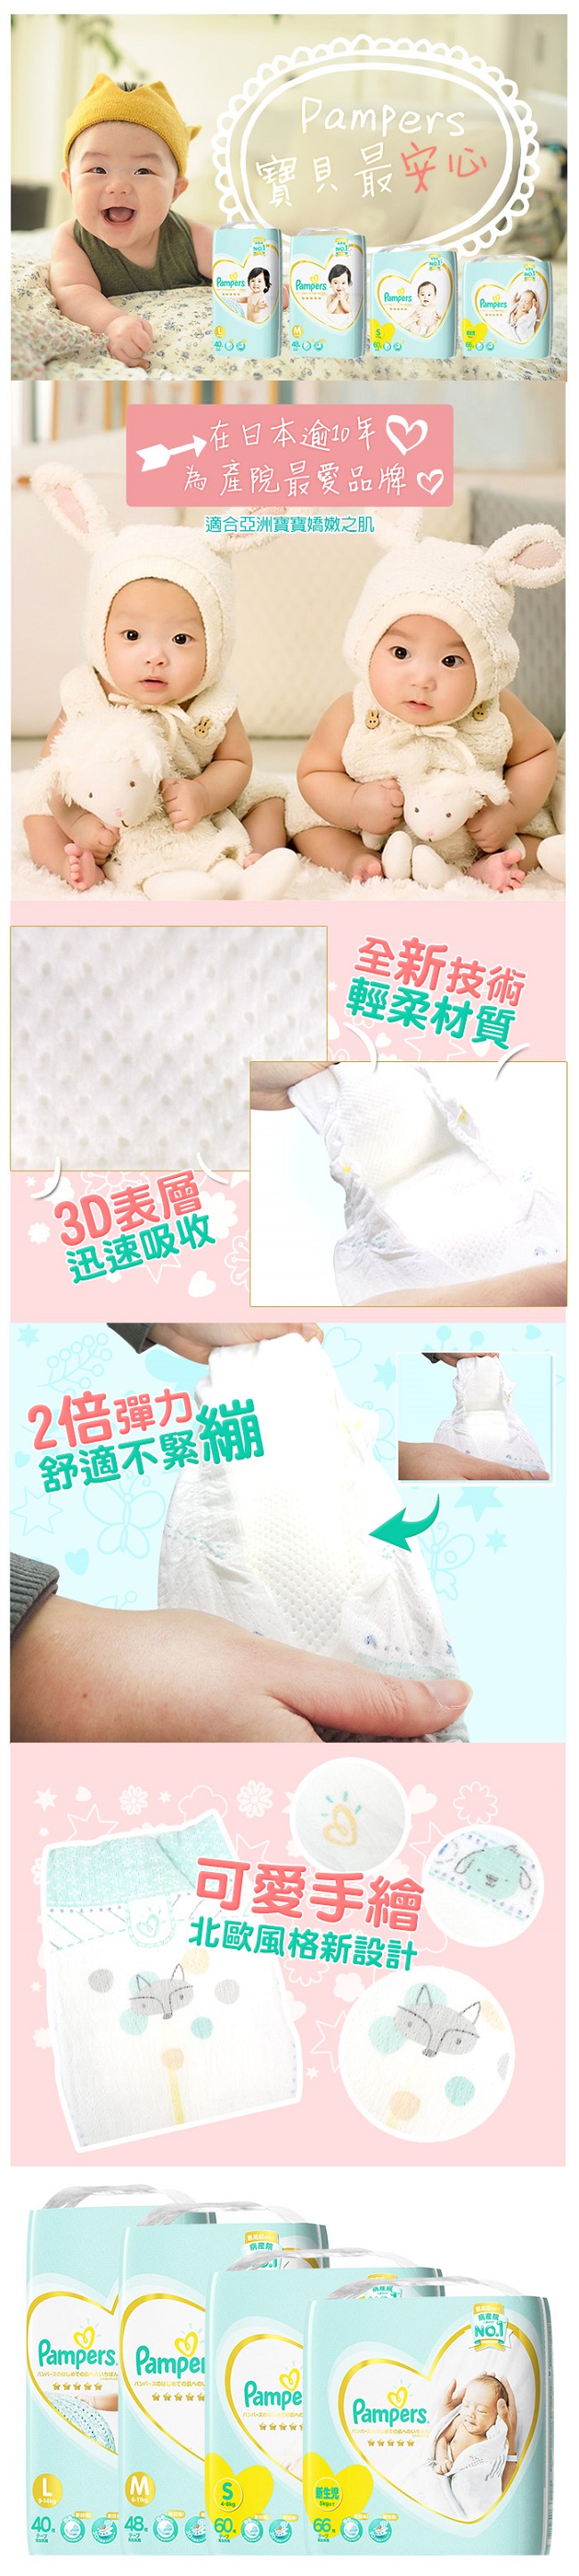 日本 Pampers 境內版 黏貼型尿布 紙尿褲NB 66 片 x 4包